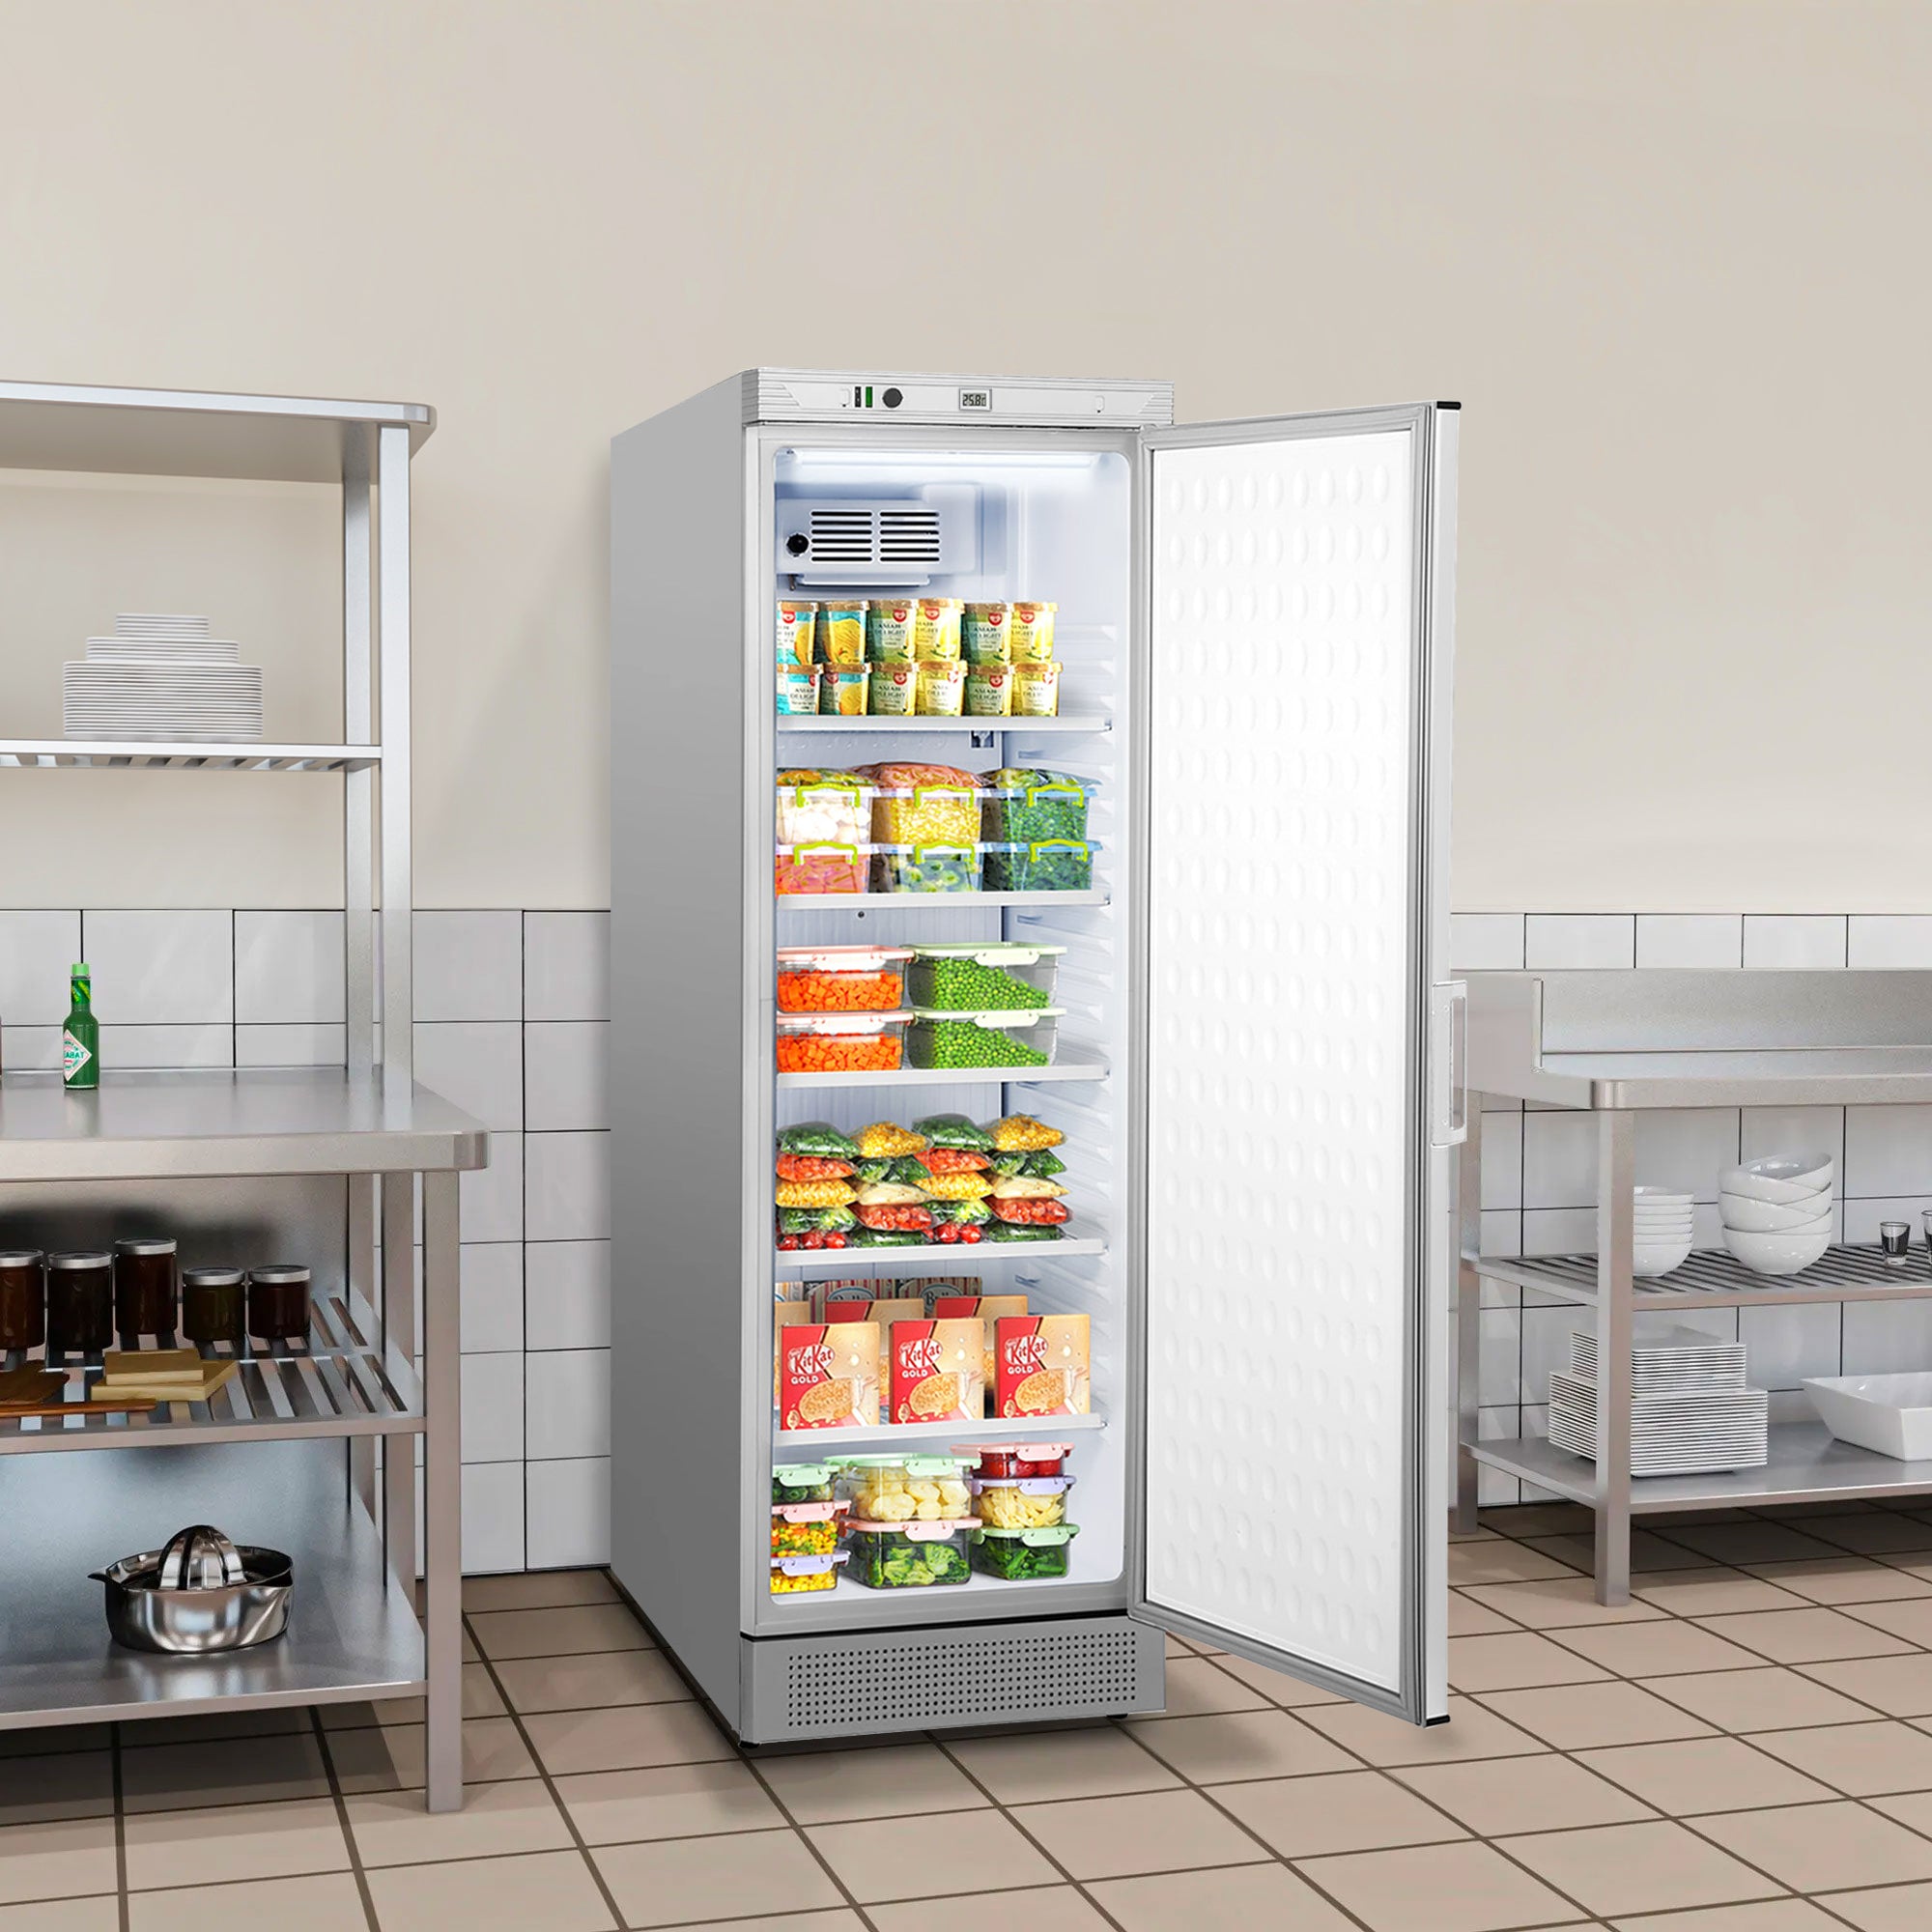 Хладилник за съхранение - 0,59 х 0,64 м - 345 литра - с 1 врата